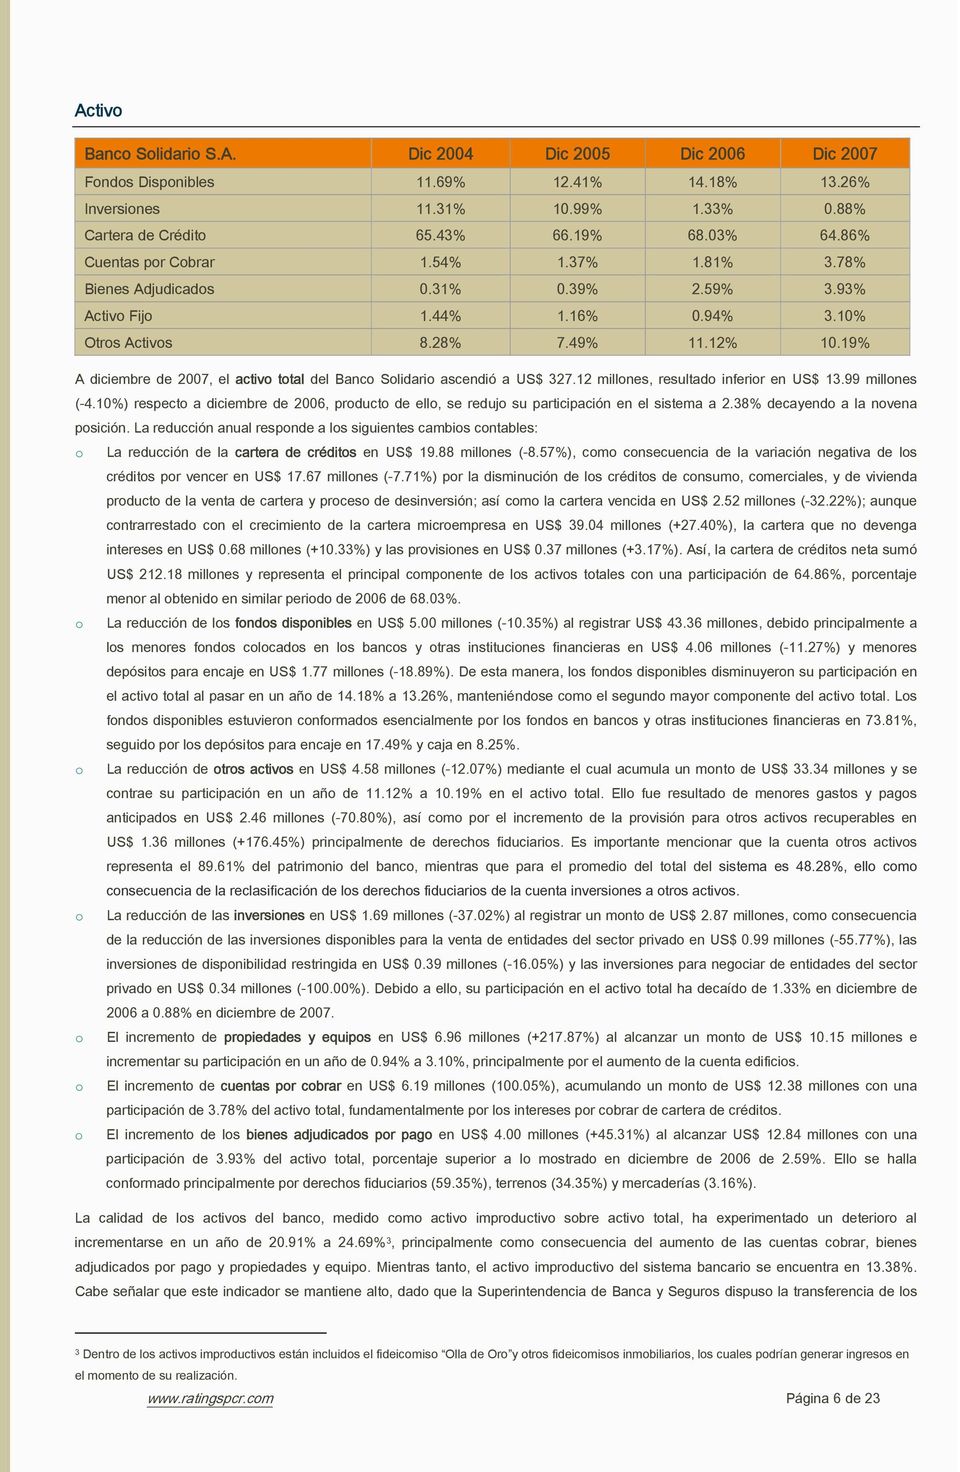 19% A diciembre de 2007, el activ ttal del Banc Slidari ascendió a US$ 327.12 millnes, resultad inferir en US$ 13.99 millnes (-4.